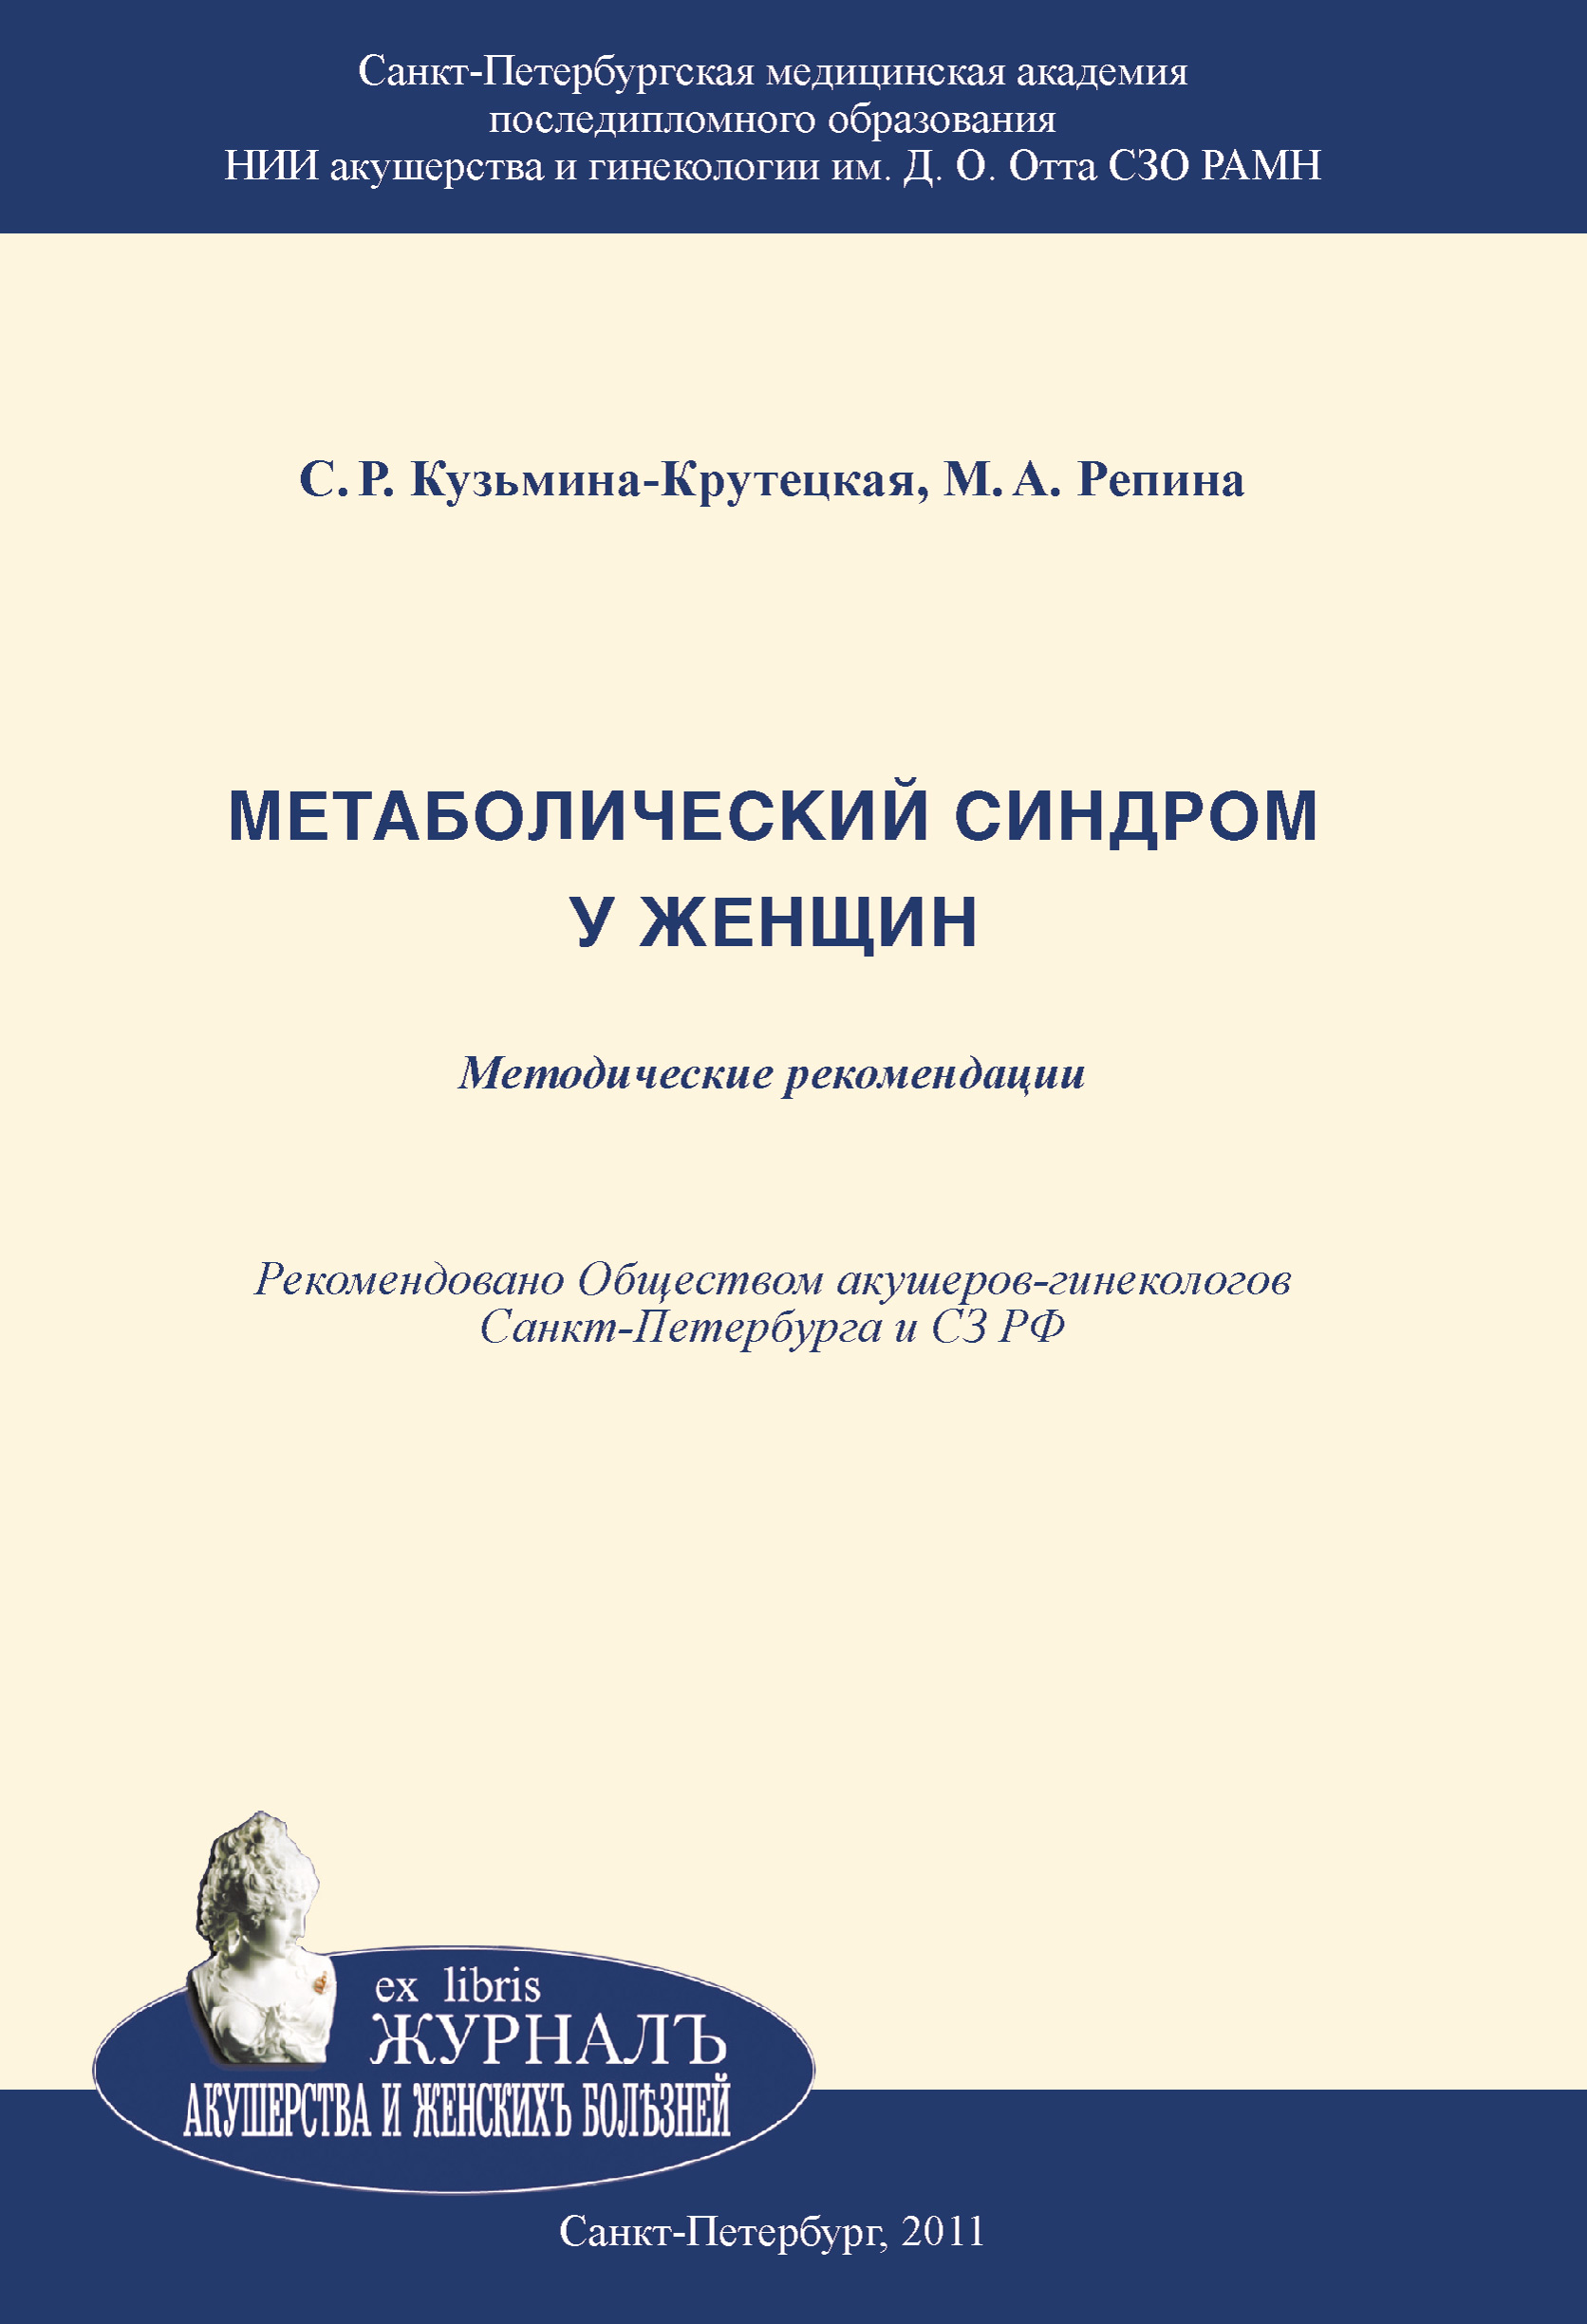 Книга Метаболический синдром у женщин из серии , созданная Маргарита Репина, Светлана Кузьмина-Крутецкая, может относится к жанру Медицина. Стоимость книги Метаболический синдром у женщин  с идентификатором 4246335 составляет 69.90 руб.